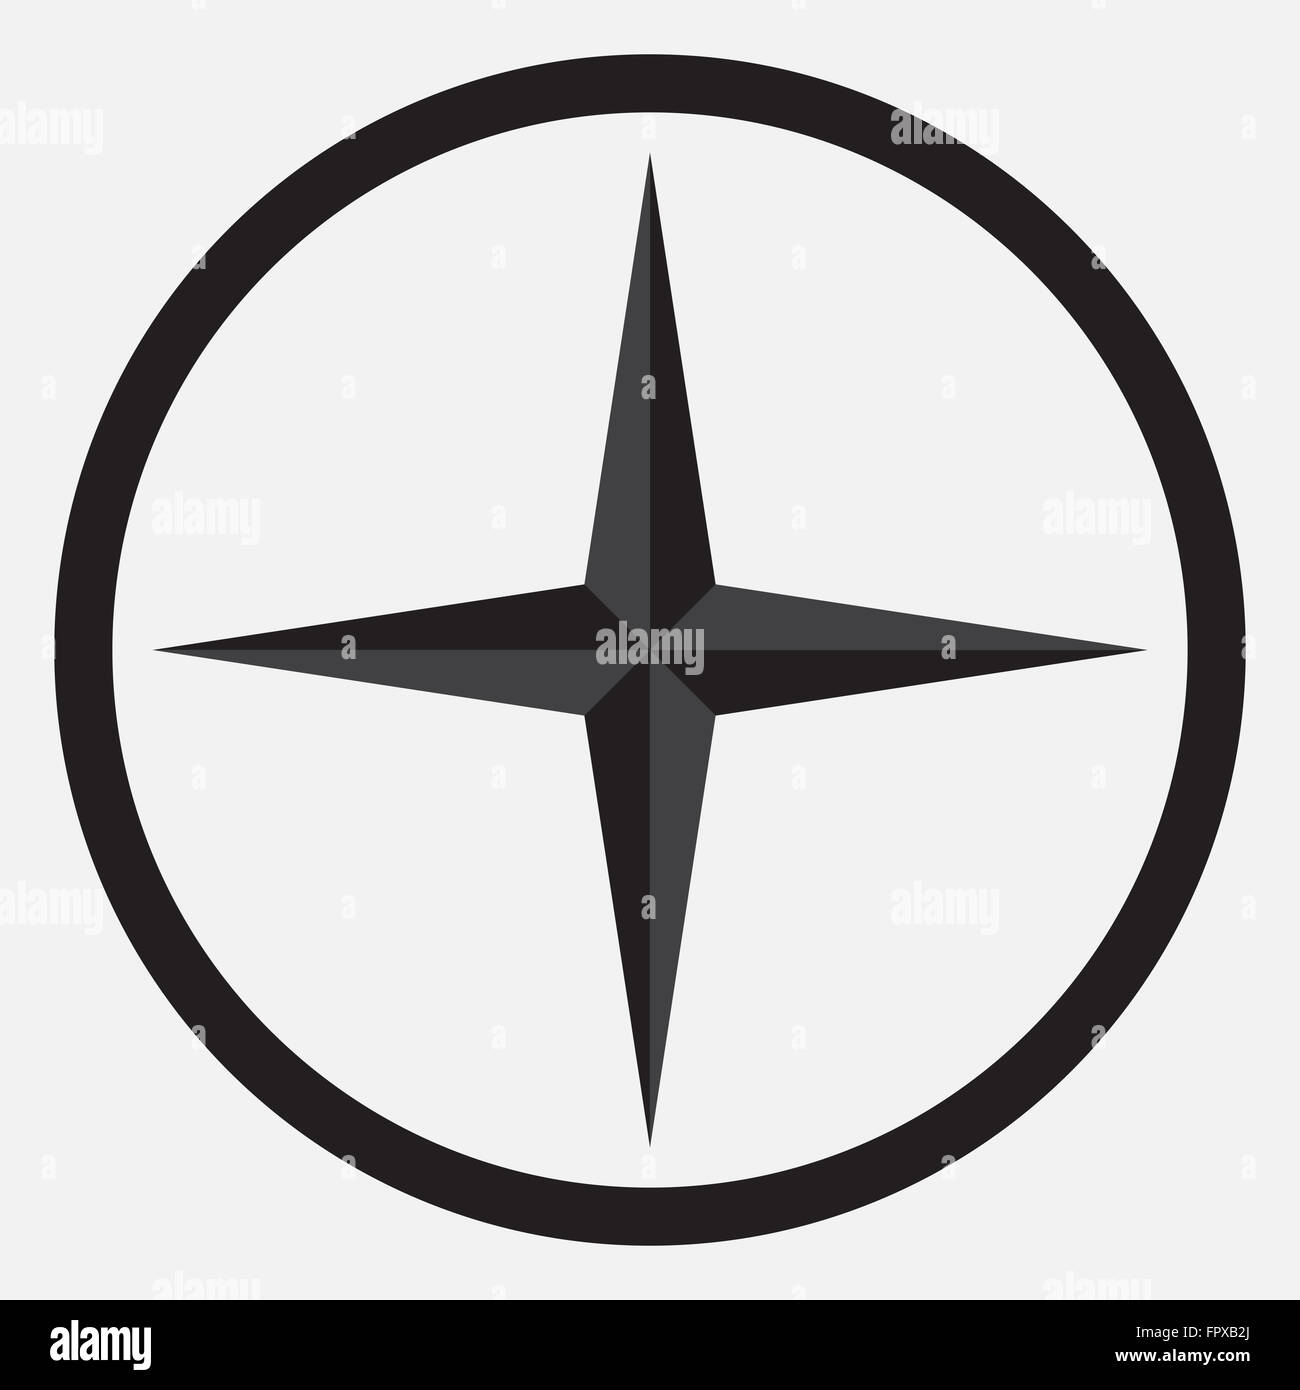 Compass icona a forma di stella monocromatico bianco e nero. Bussola e star, nautico star, bussola, in direzione di navigazione. Abstract del vettore Foto Stock